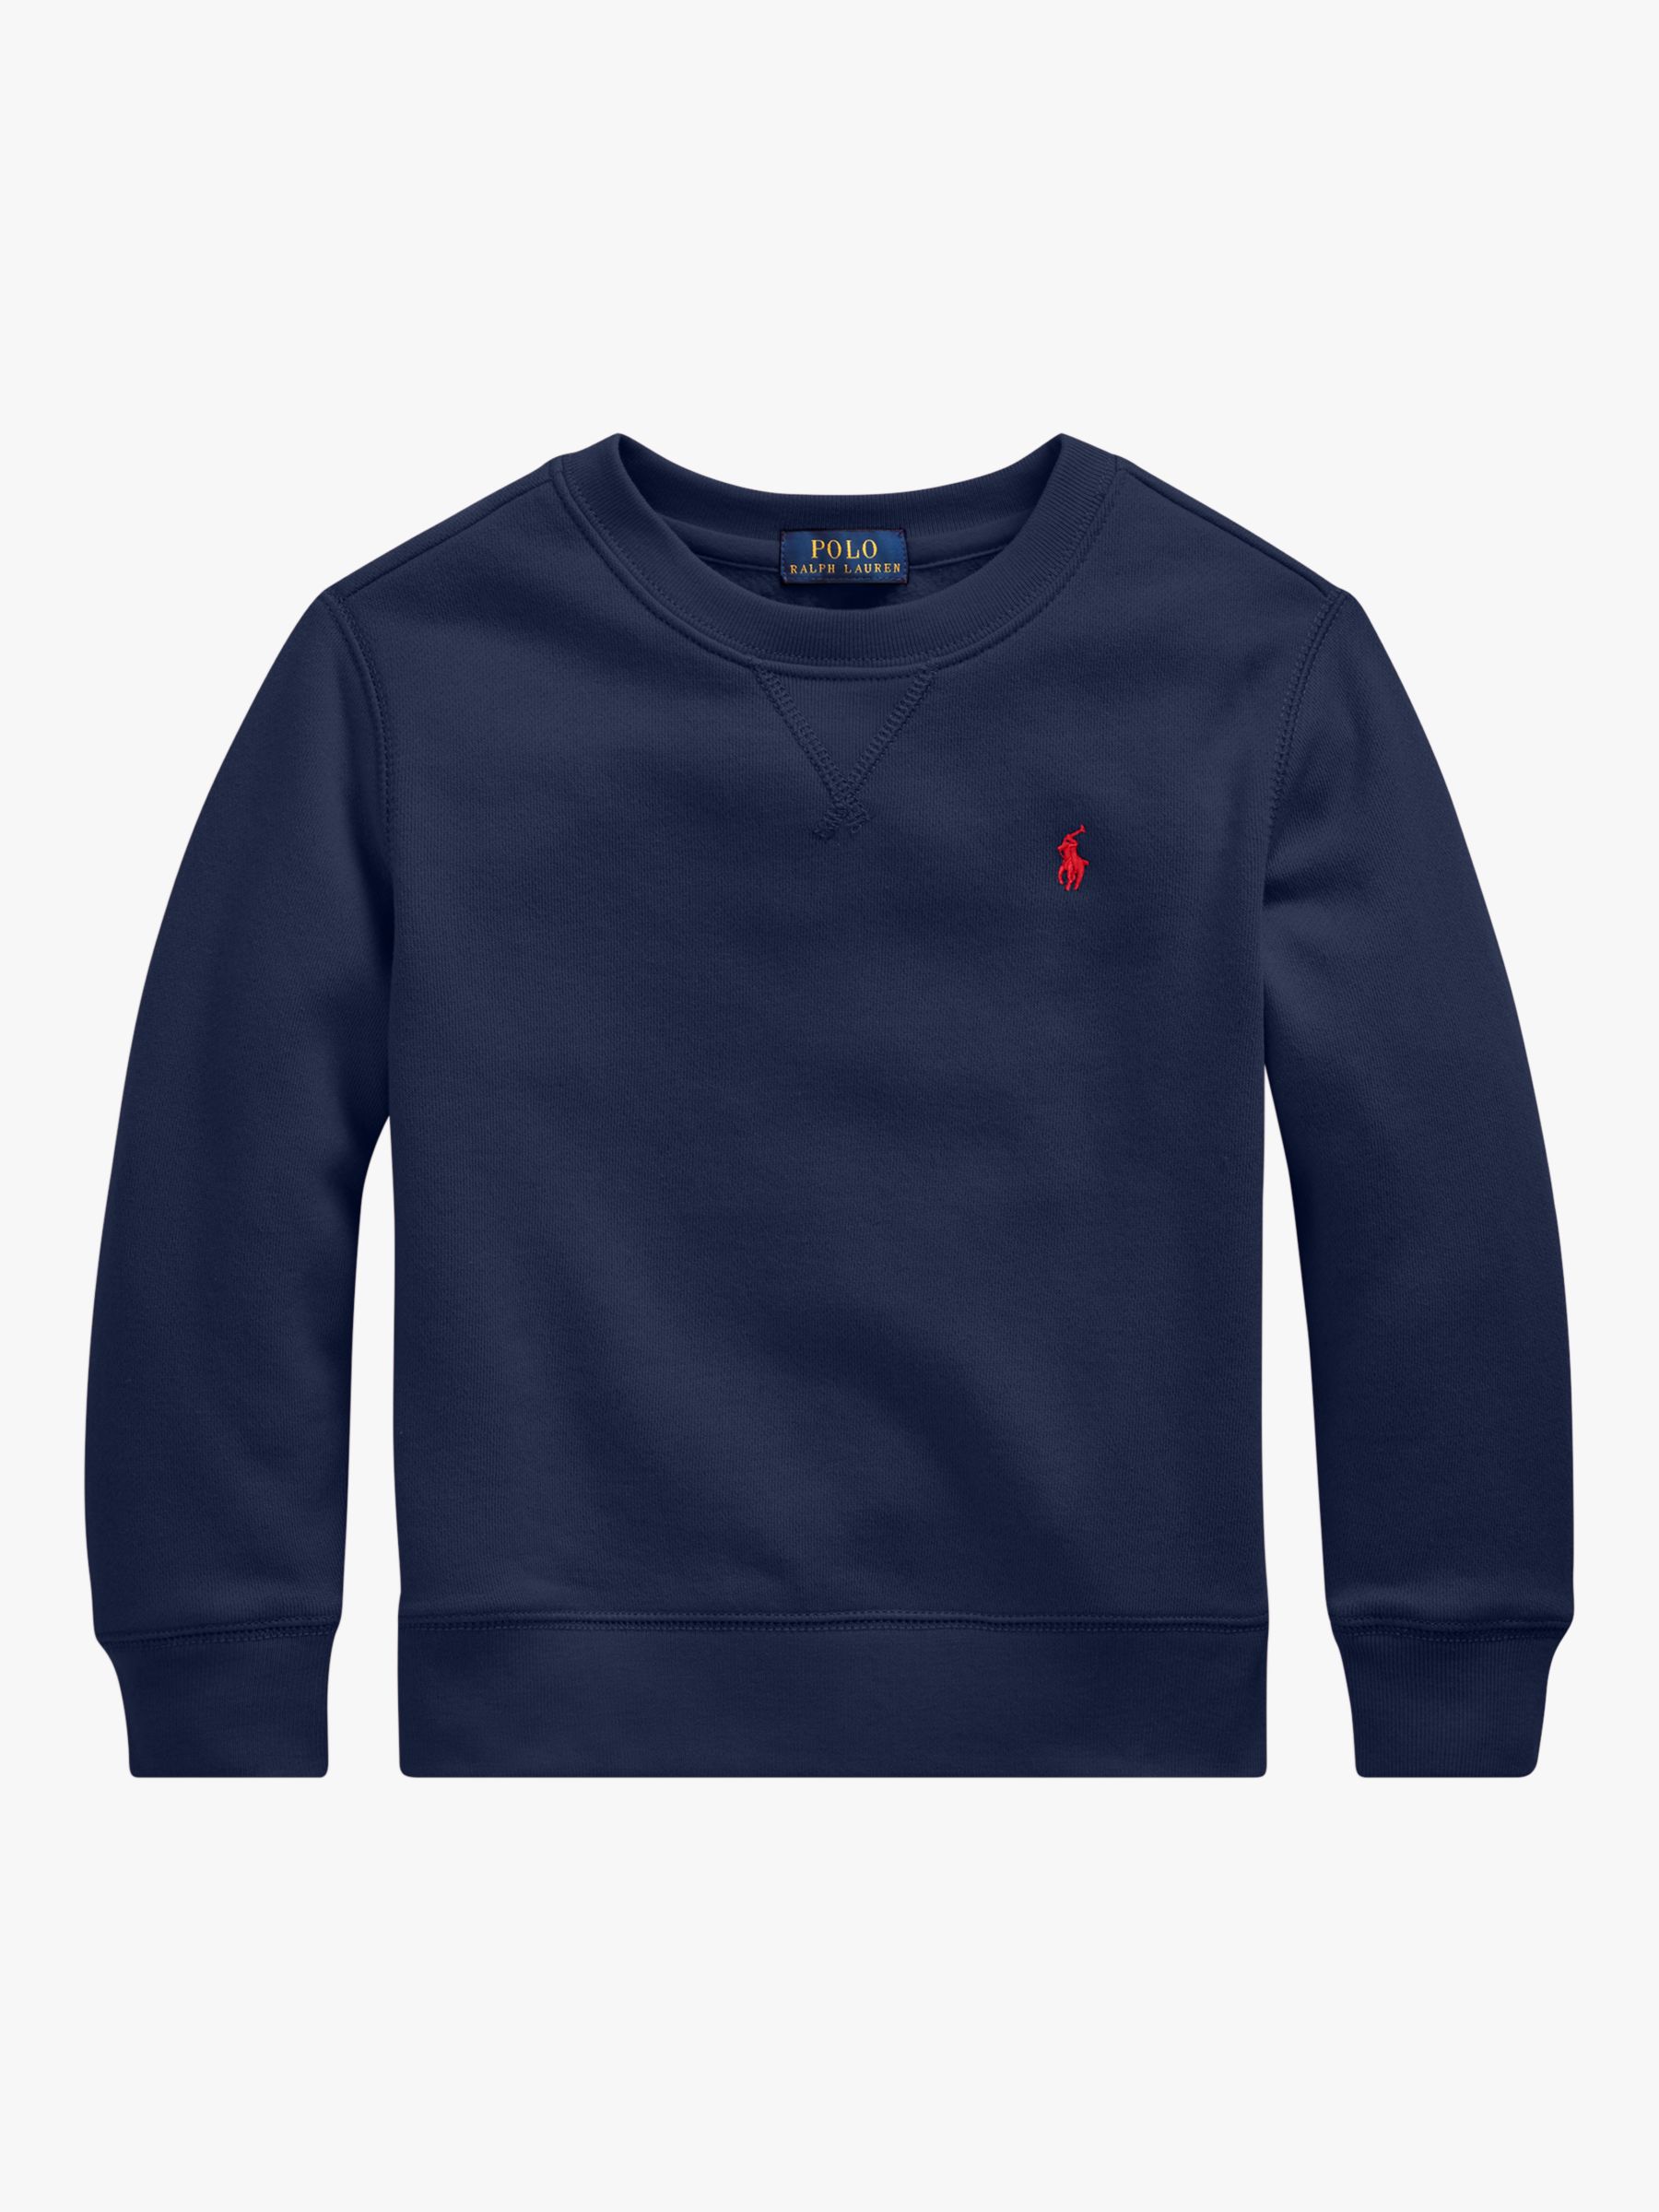 ralph lauren navy blue sweatshirt